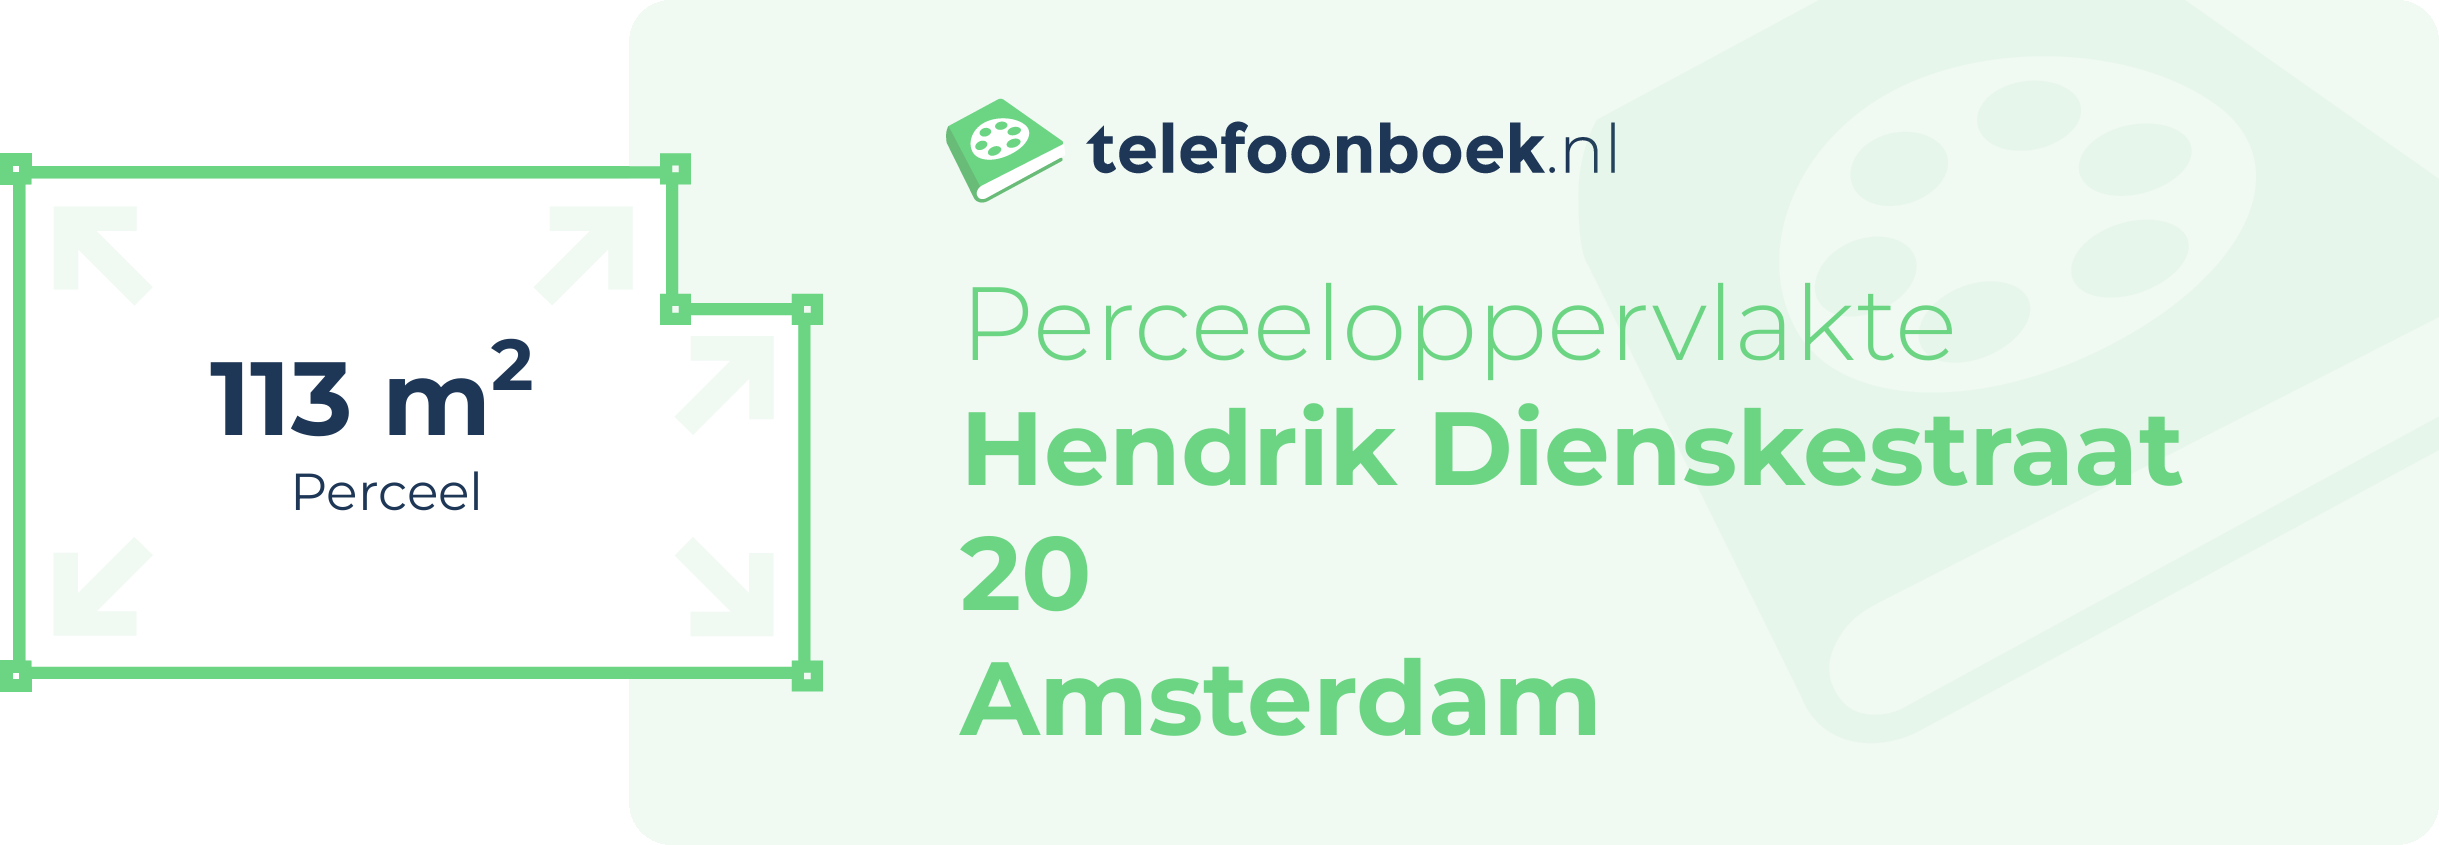 Perceeloppervlakte Hendrik Dienskestraat 20 Amsterdam